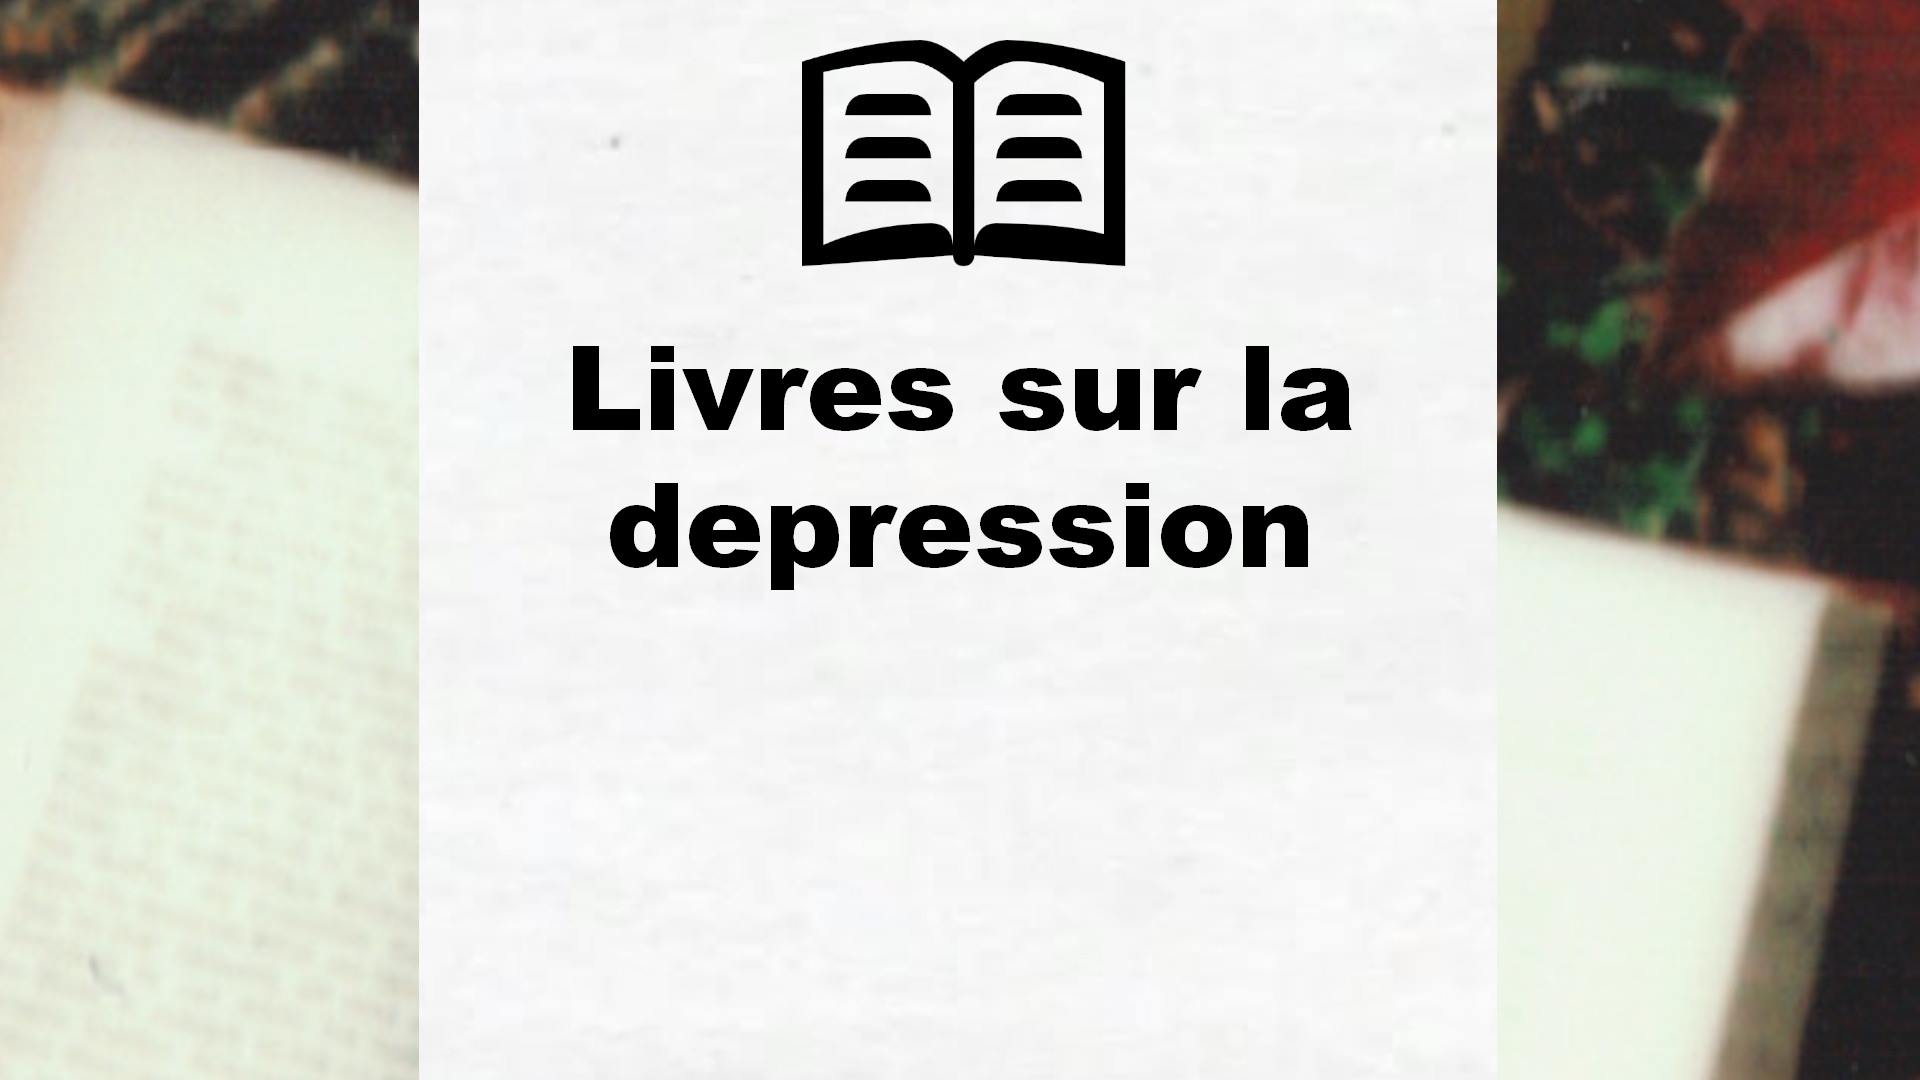 Livres sur la depression